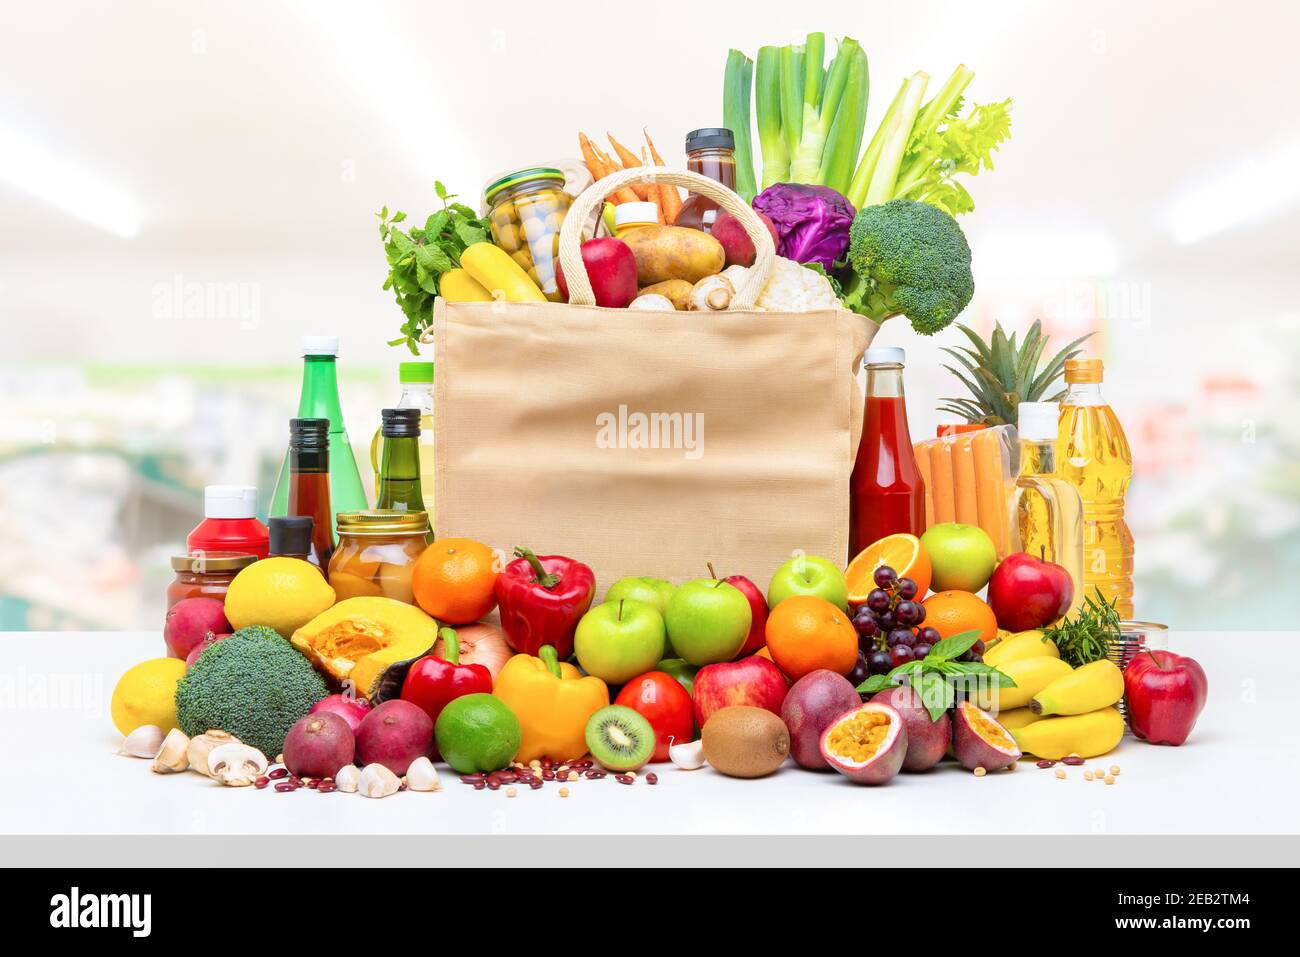 Farbenfrohe Lebensmittel und Lebensmittel, darunter frisches Obst und Gemüse Weiße Arbeitsplatte im Supermarkt Hintergrund Stockfoto